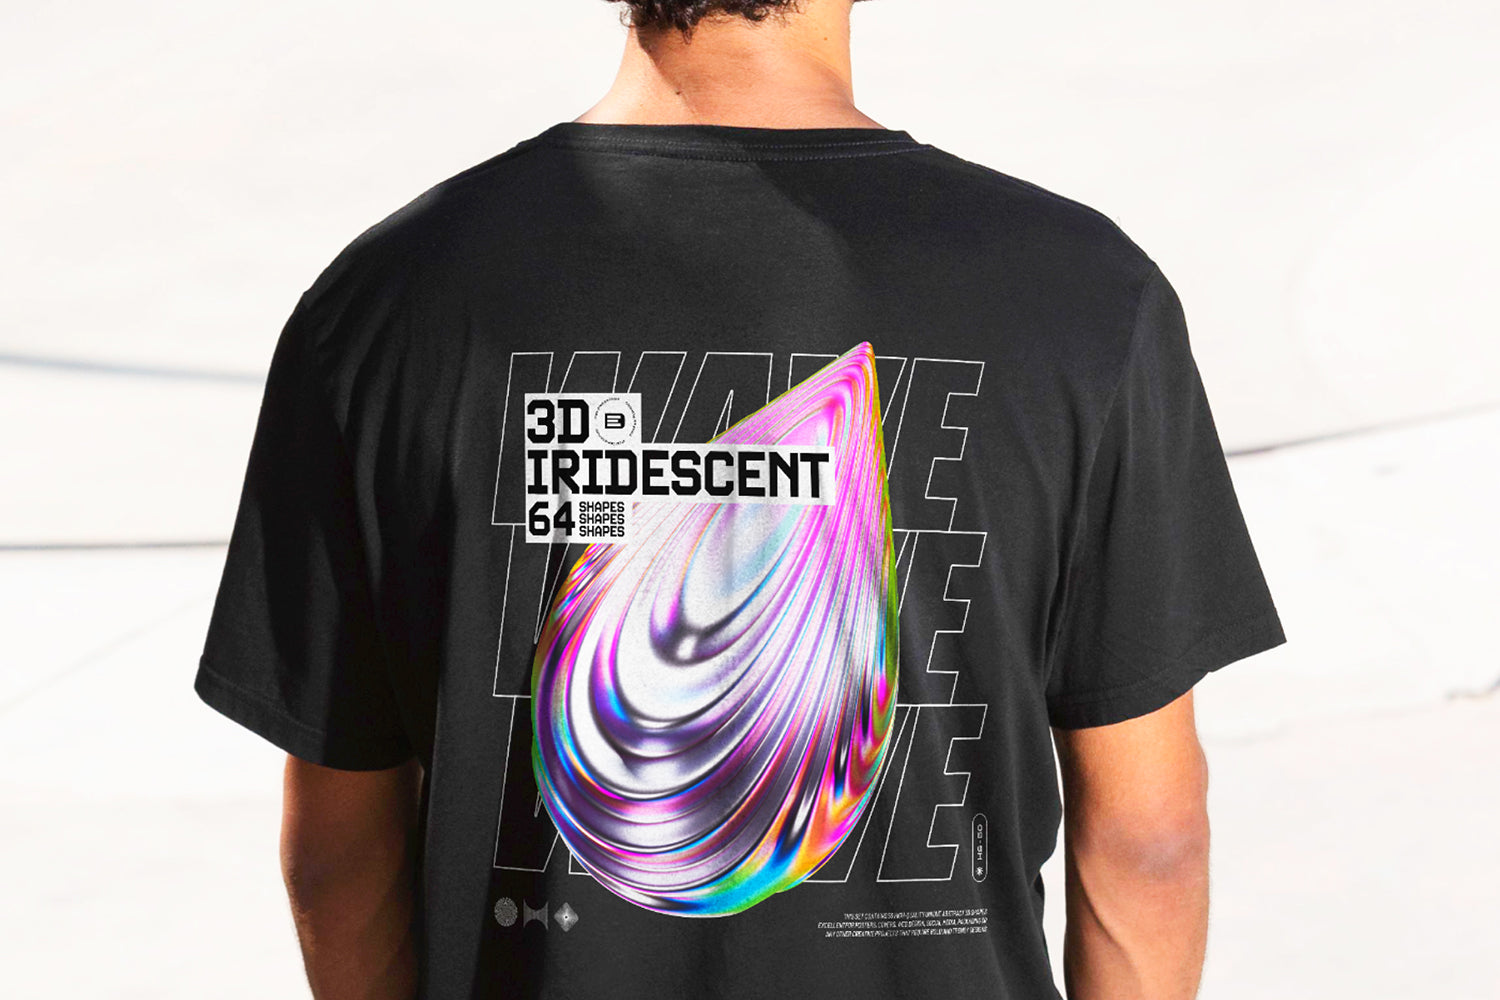 3D Iridescent HD Shapes